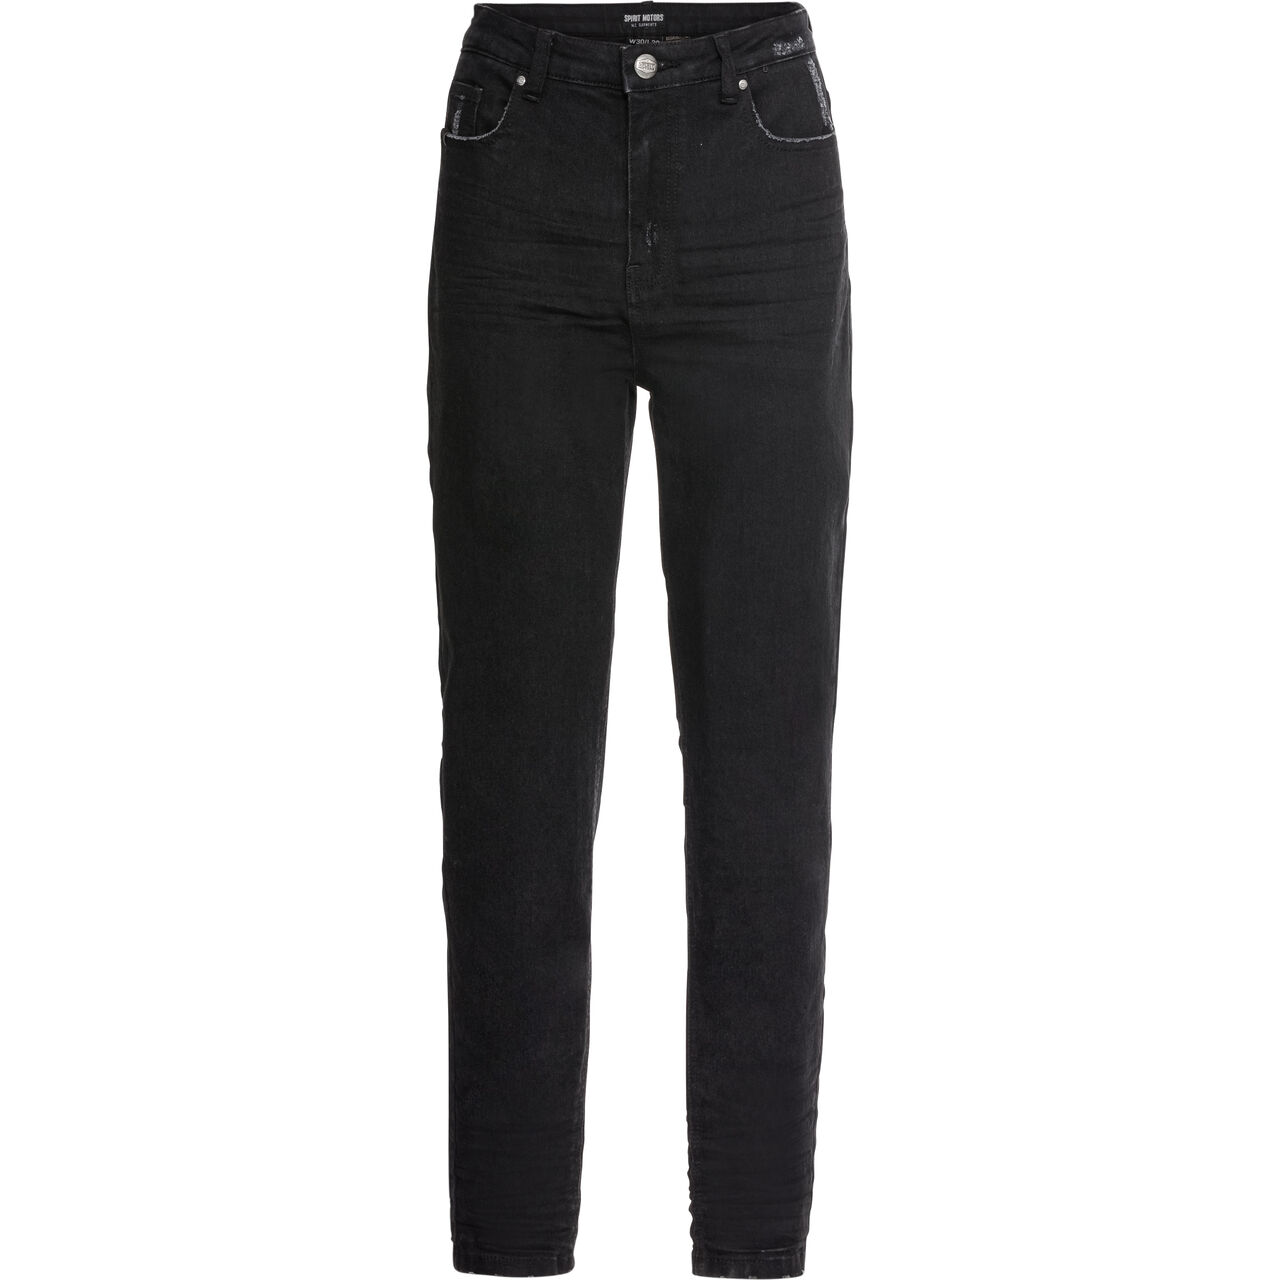 Skinny High Heather Ladies Jeans black 34/32